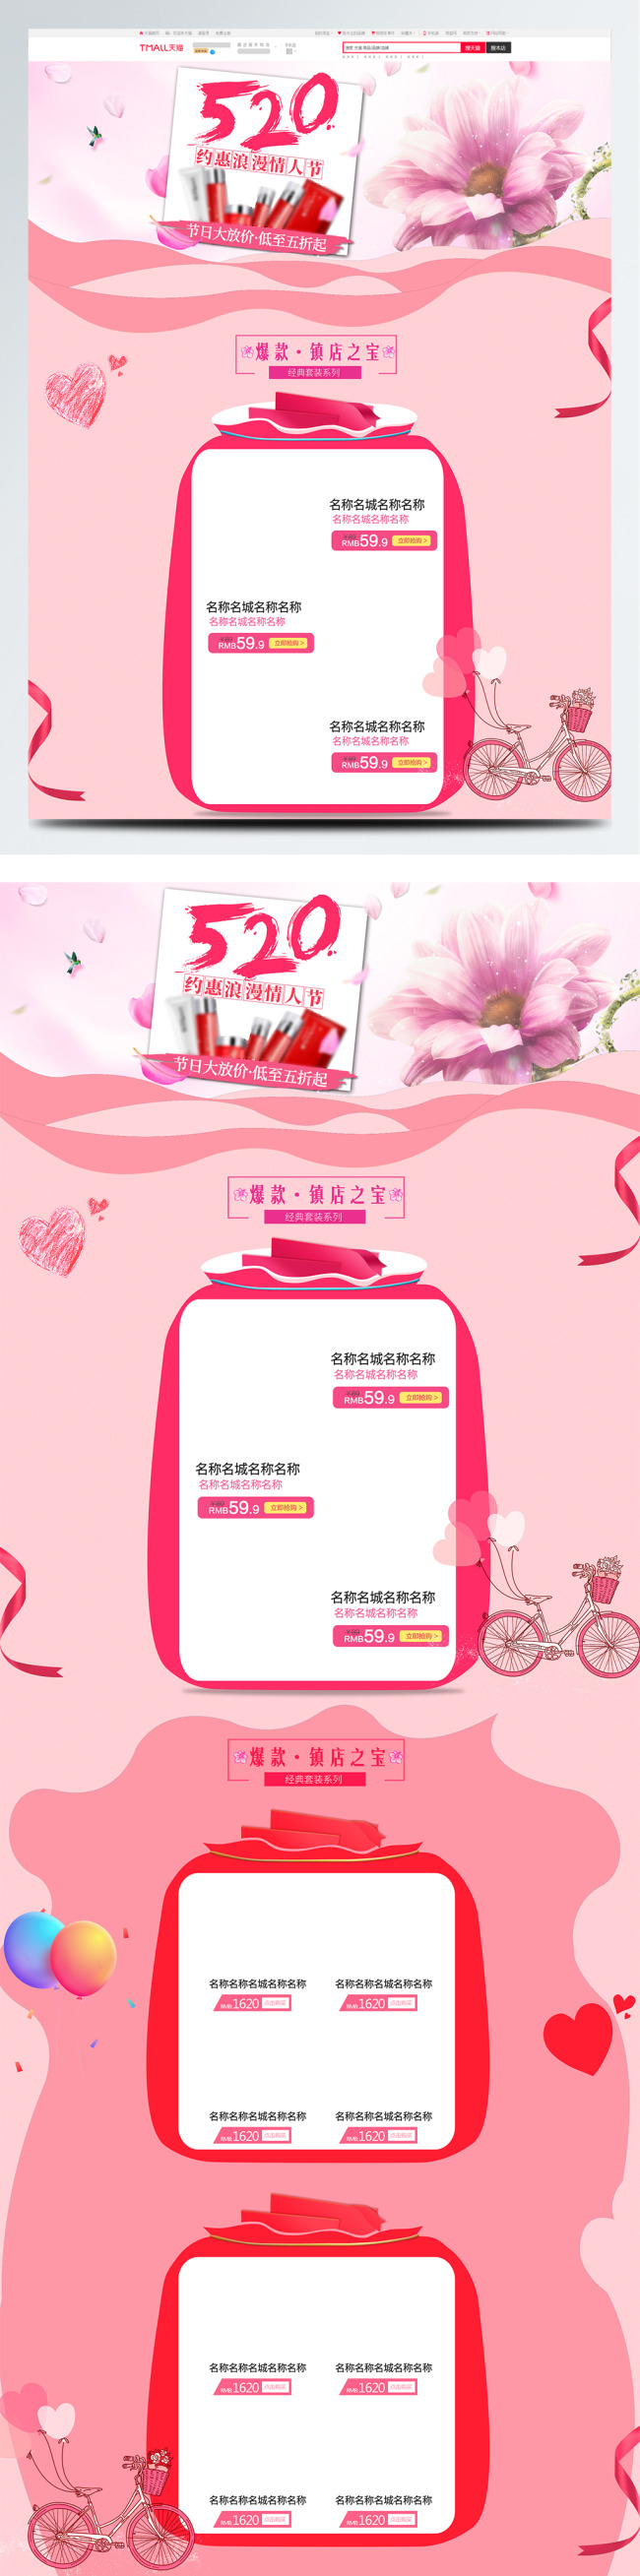 粉色简约梦幻520浪漫情人节电商首页模板图片